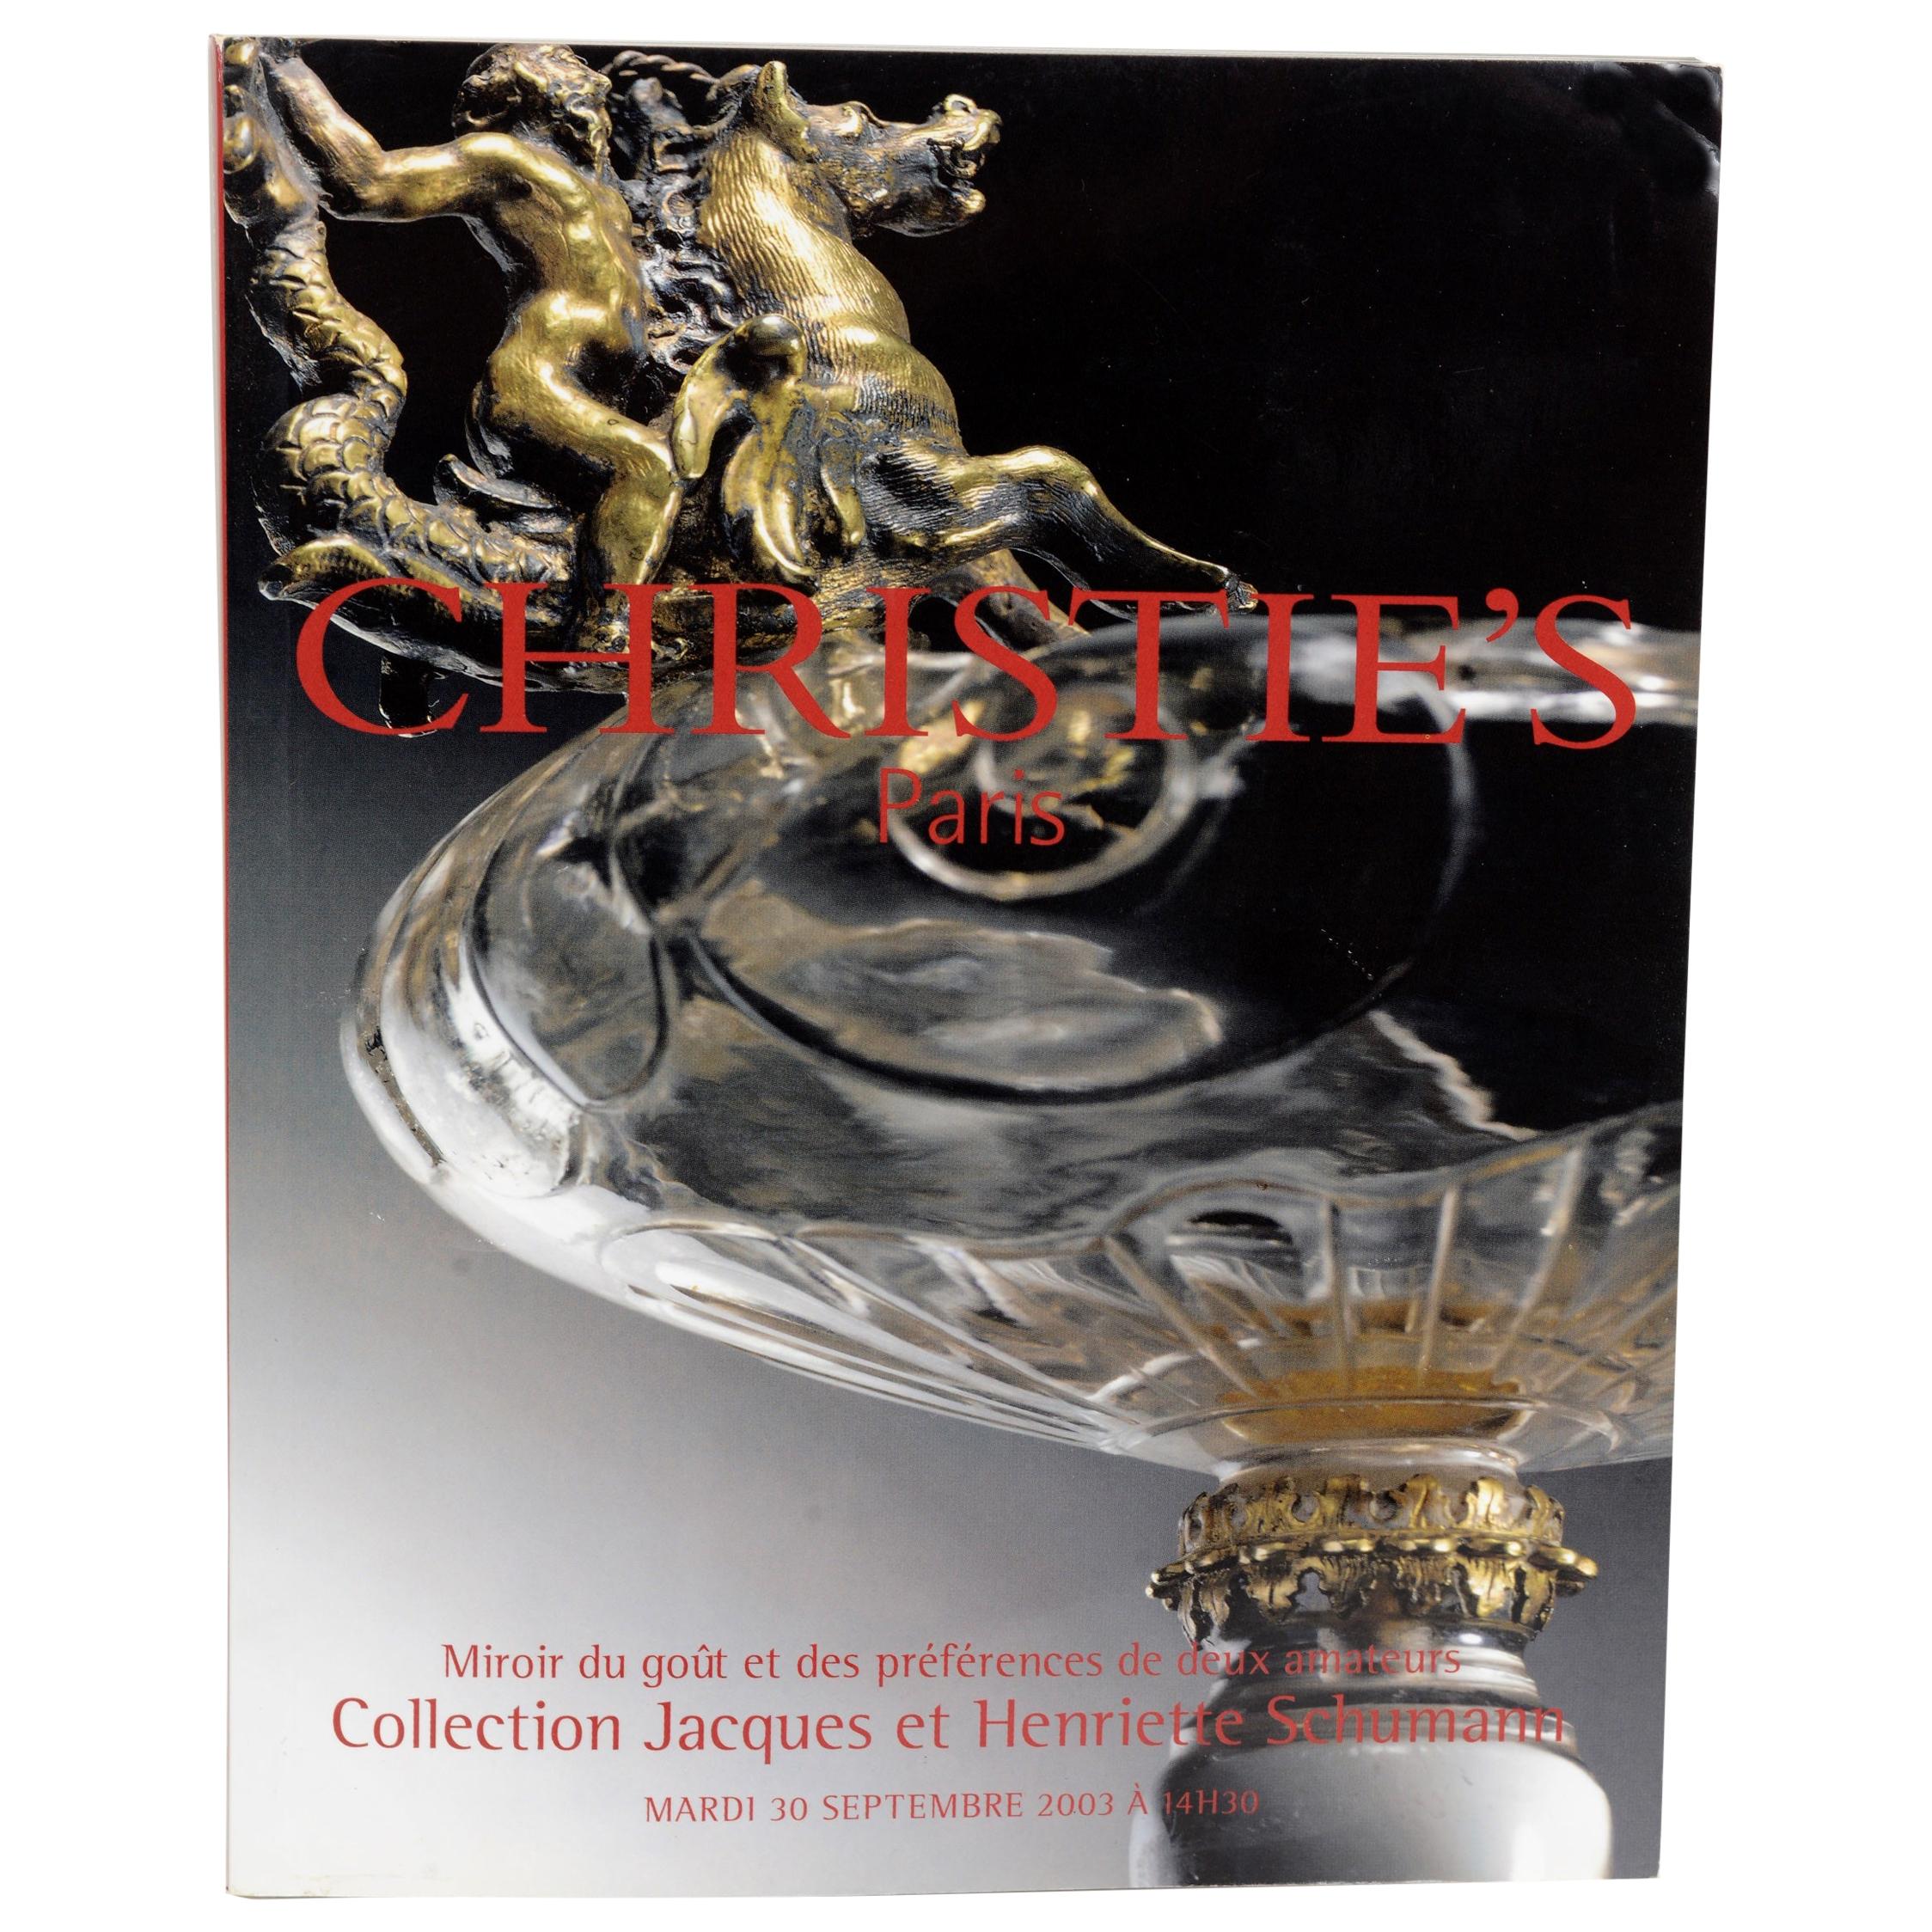 Christie's Paris Collection Jacques et Henriette Schumann For Sale